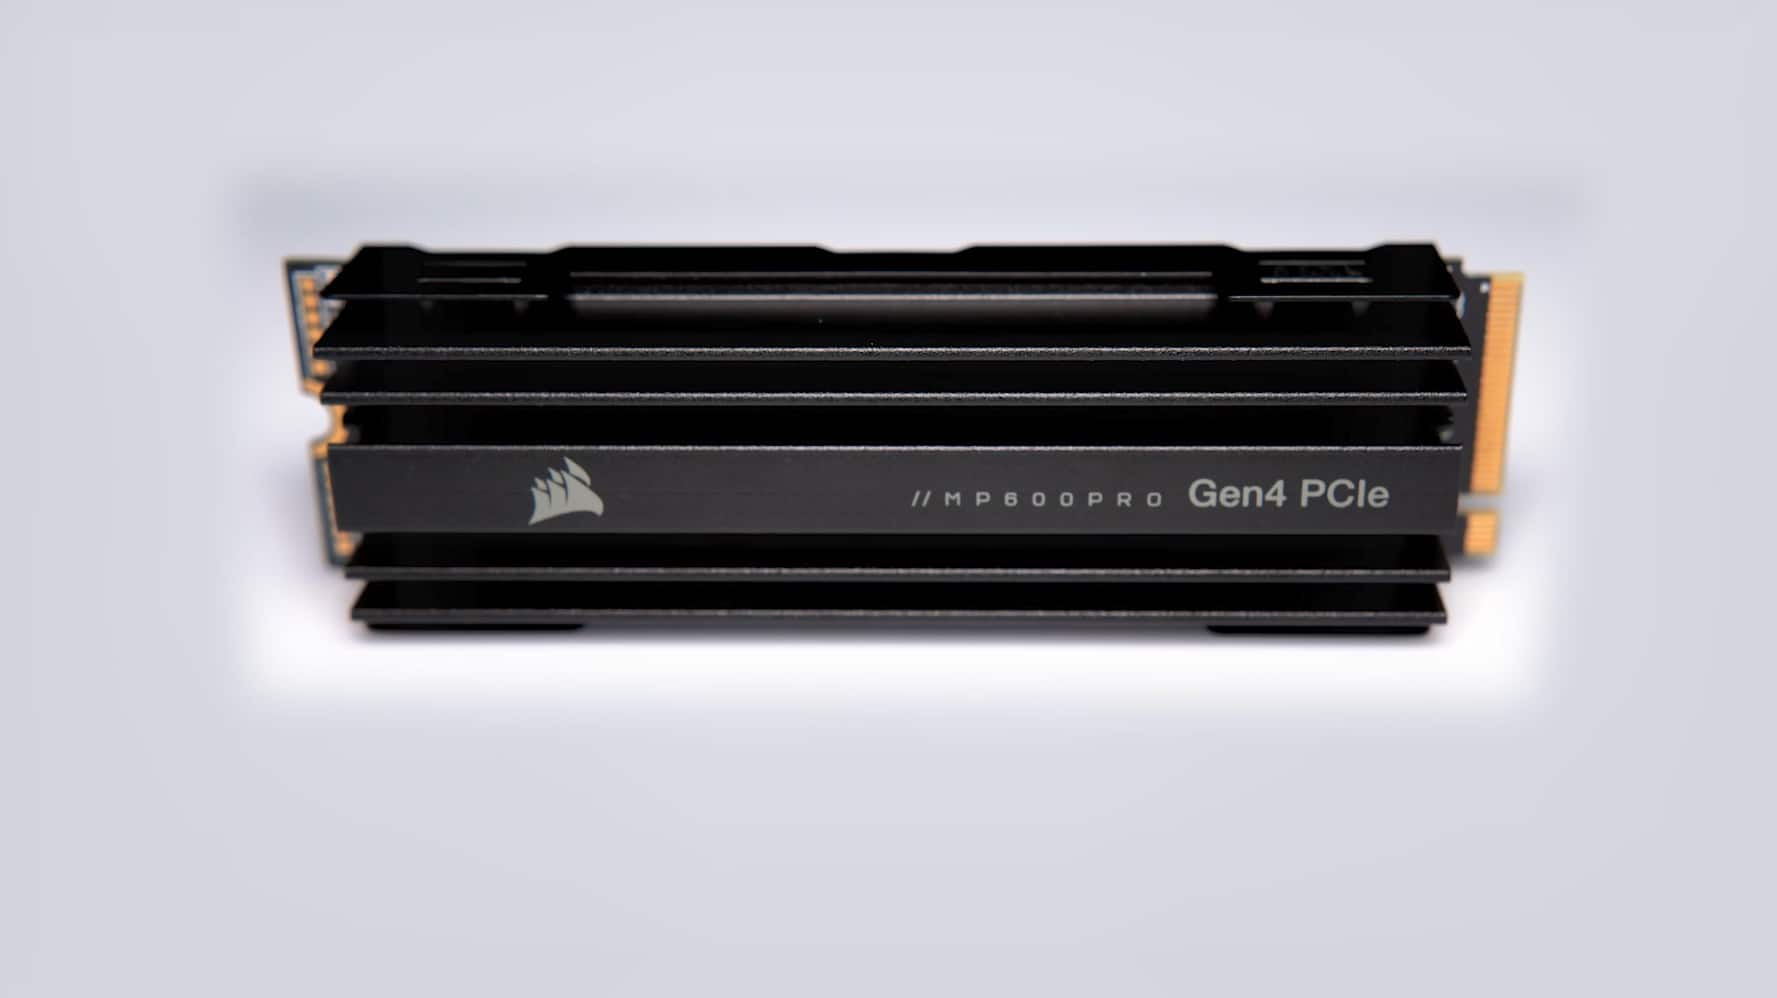 MP600 PRO 4TB M.2 NVMe PCIe Gen. 4 x4 SSD